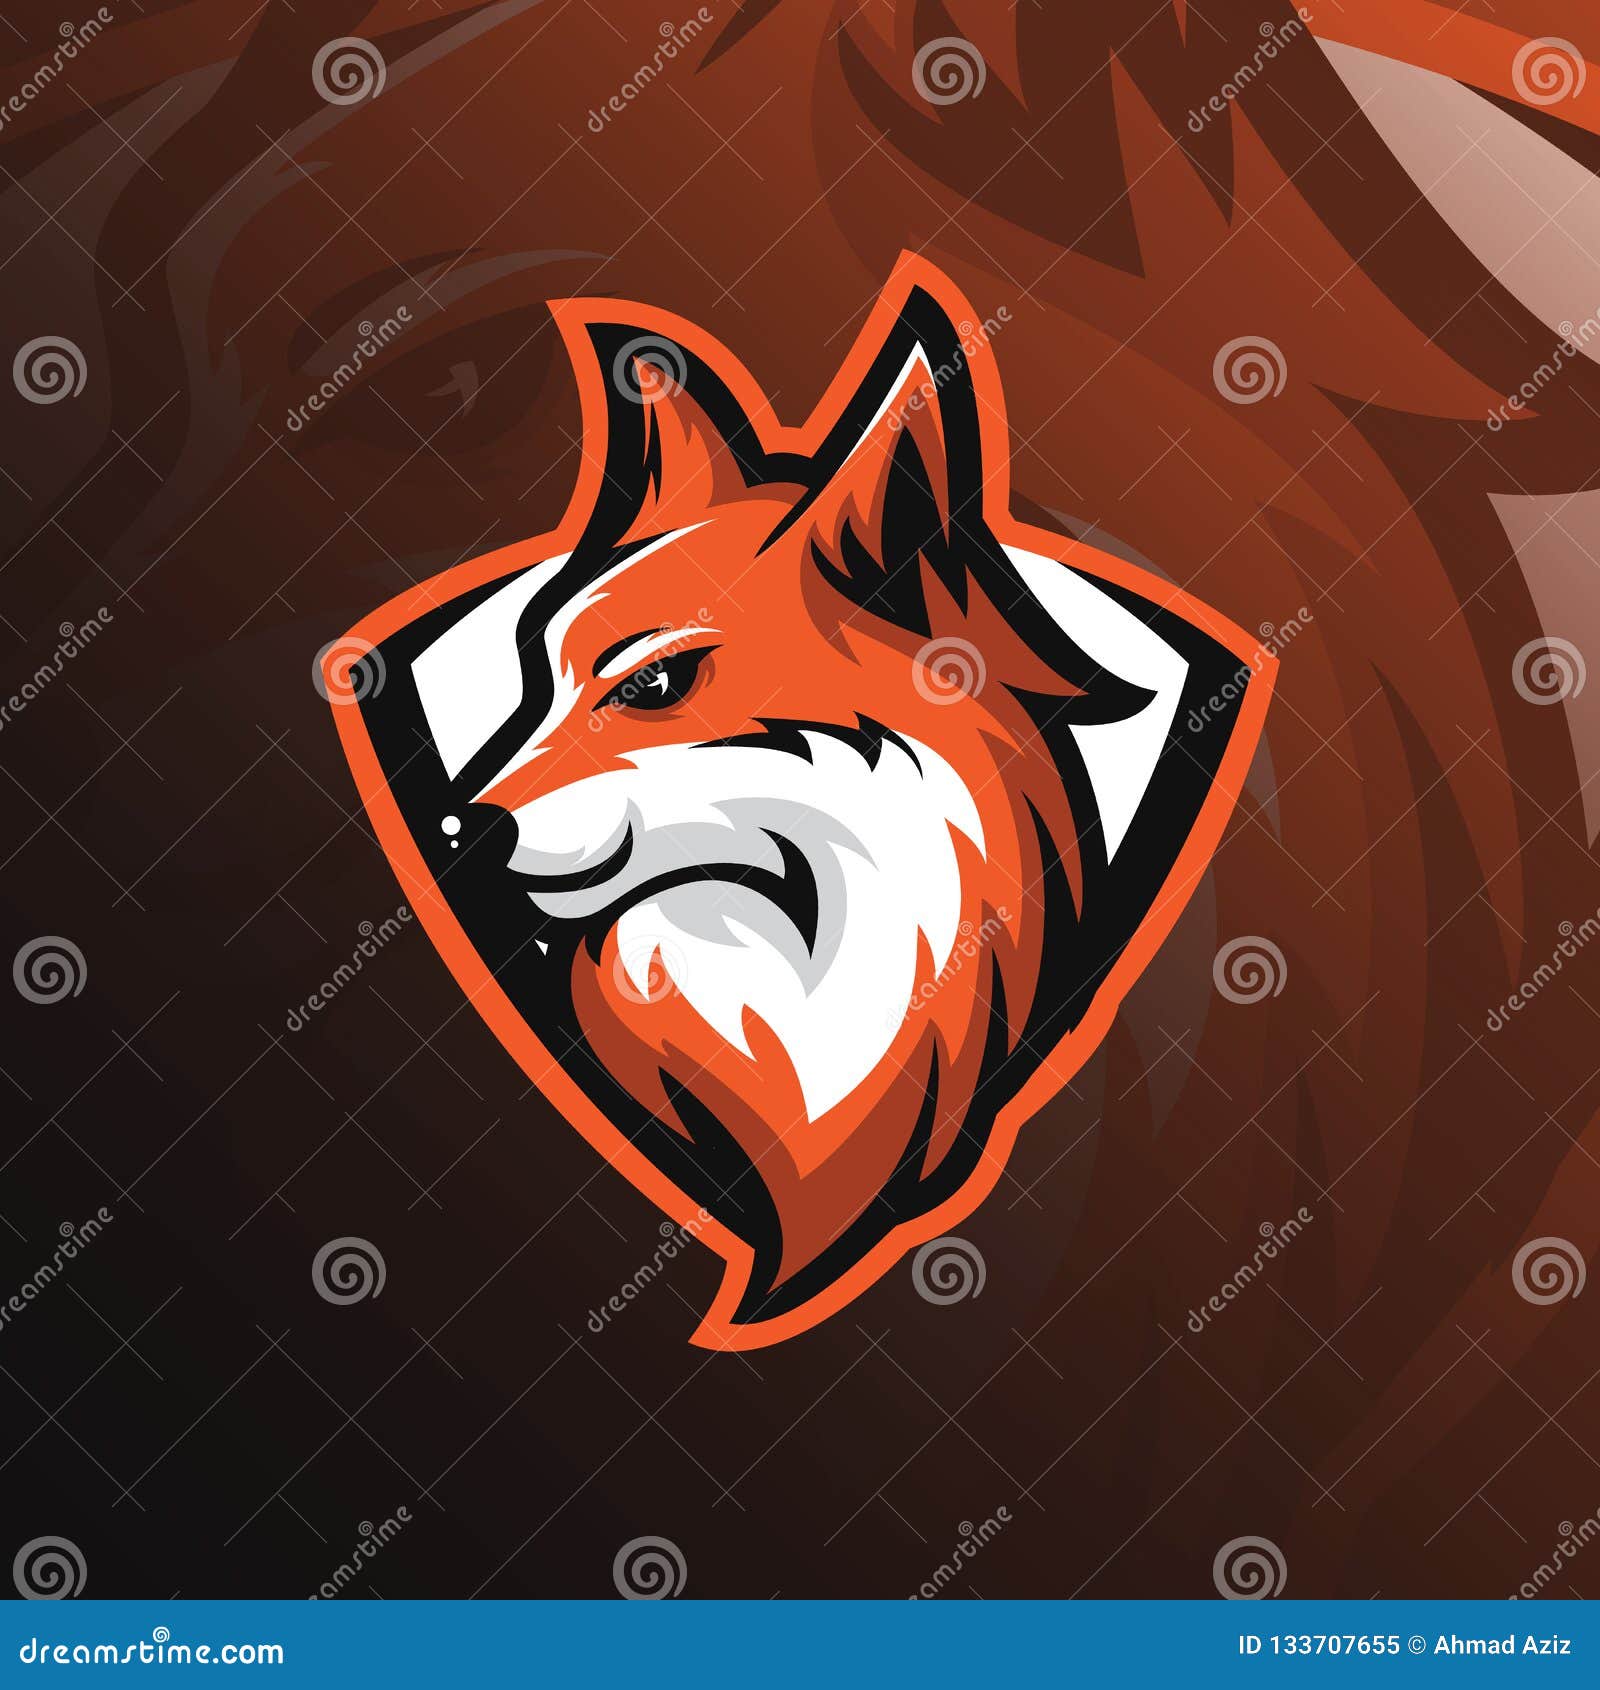 Red fox logo design Royalty Free Vector Image  VectorStock